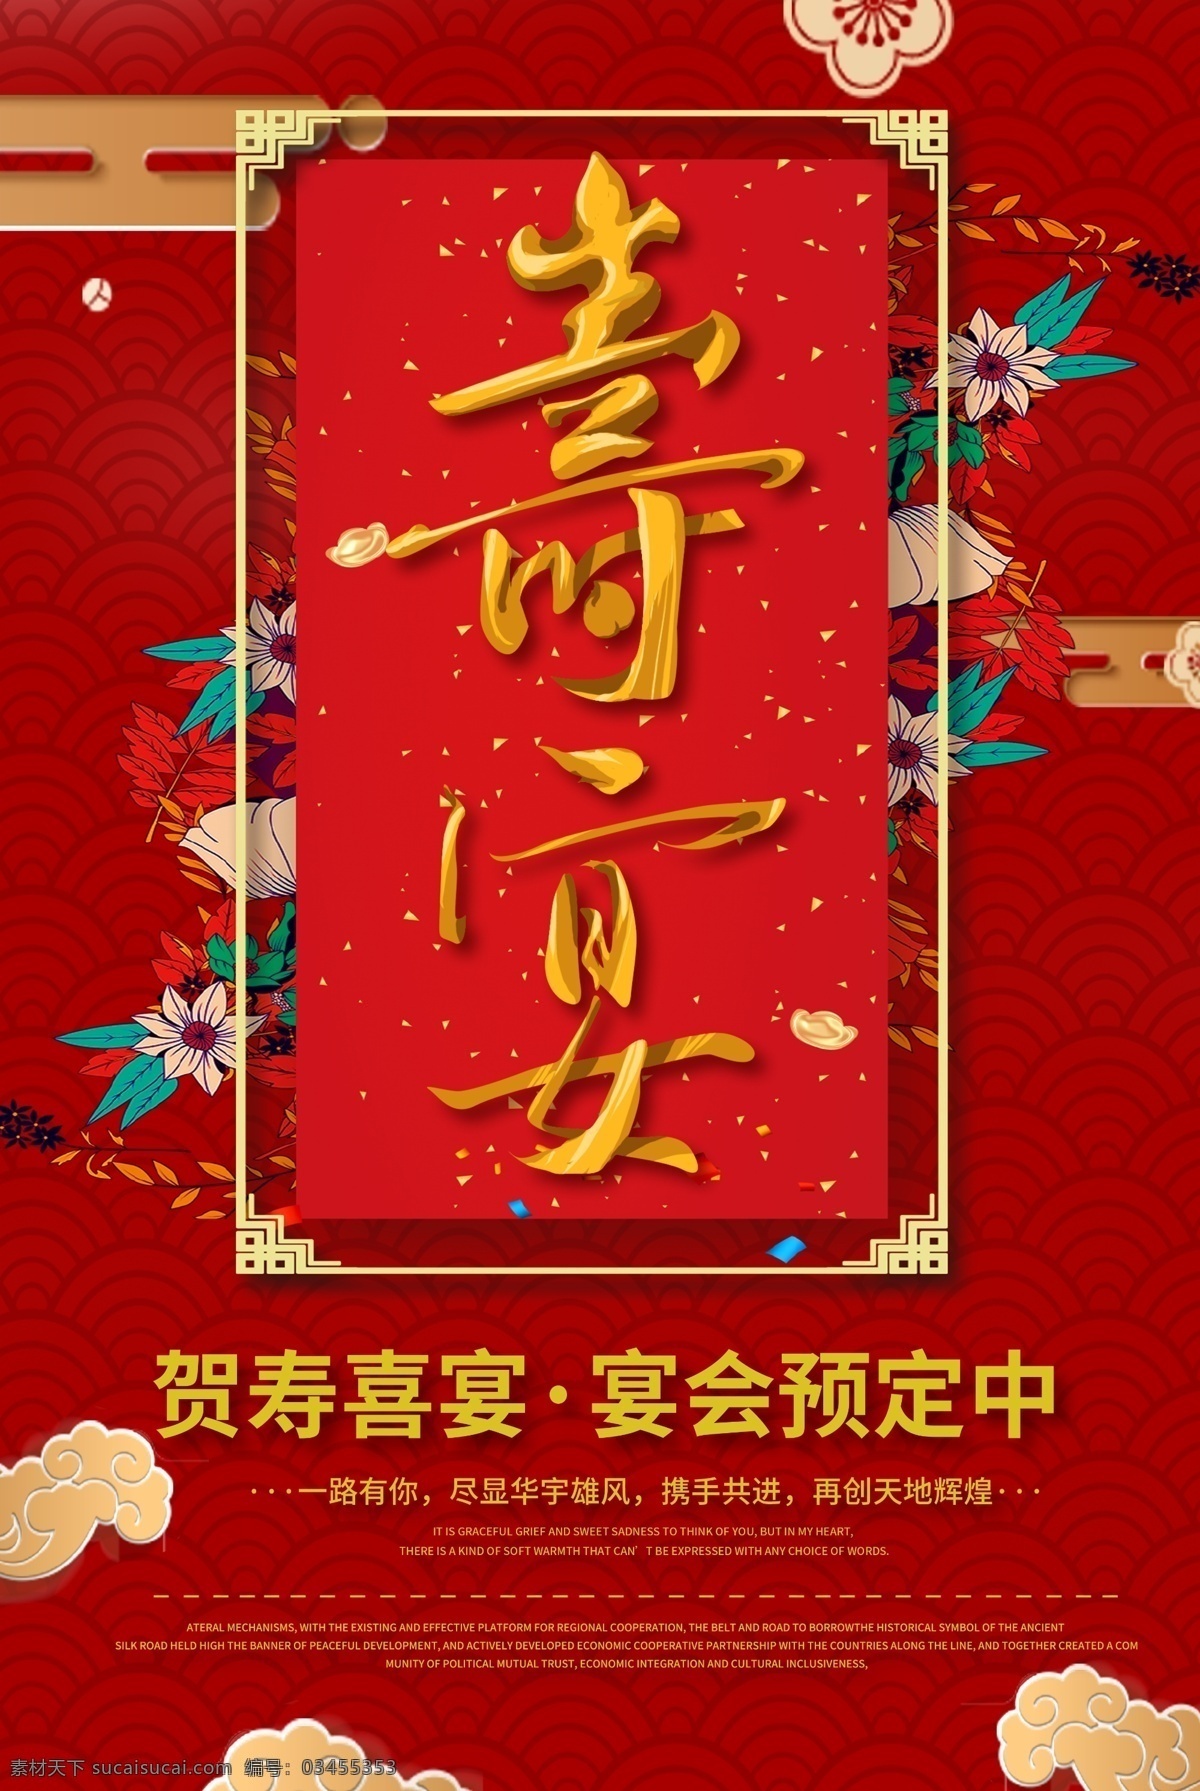 寿宴图片 寿 寿字 寿艺术字 寿海报 寿背景 寿宴 寿宴背景